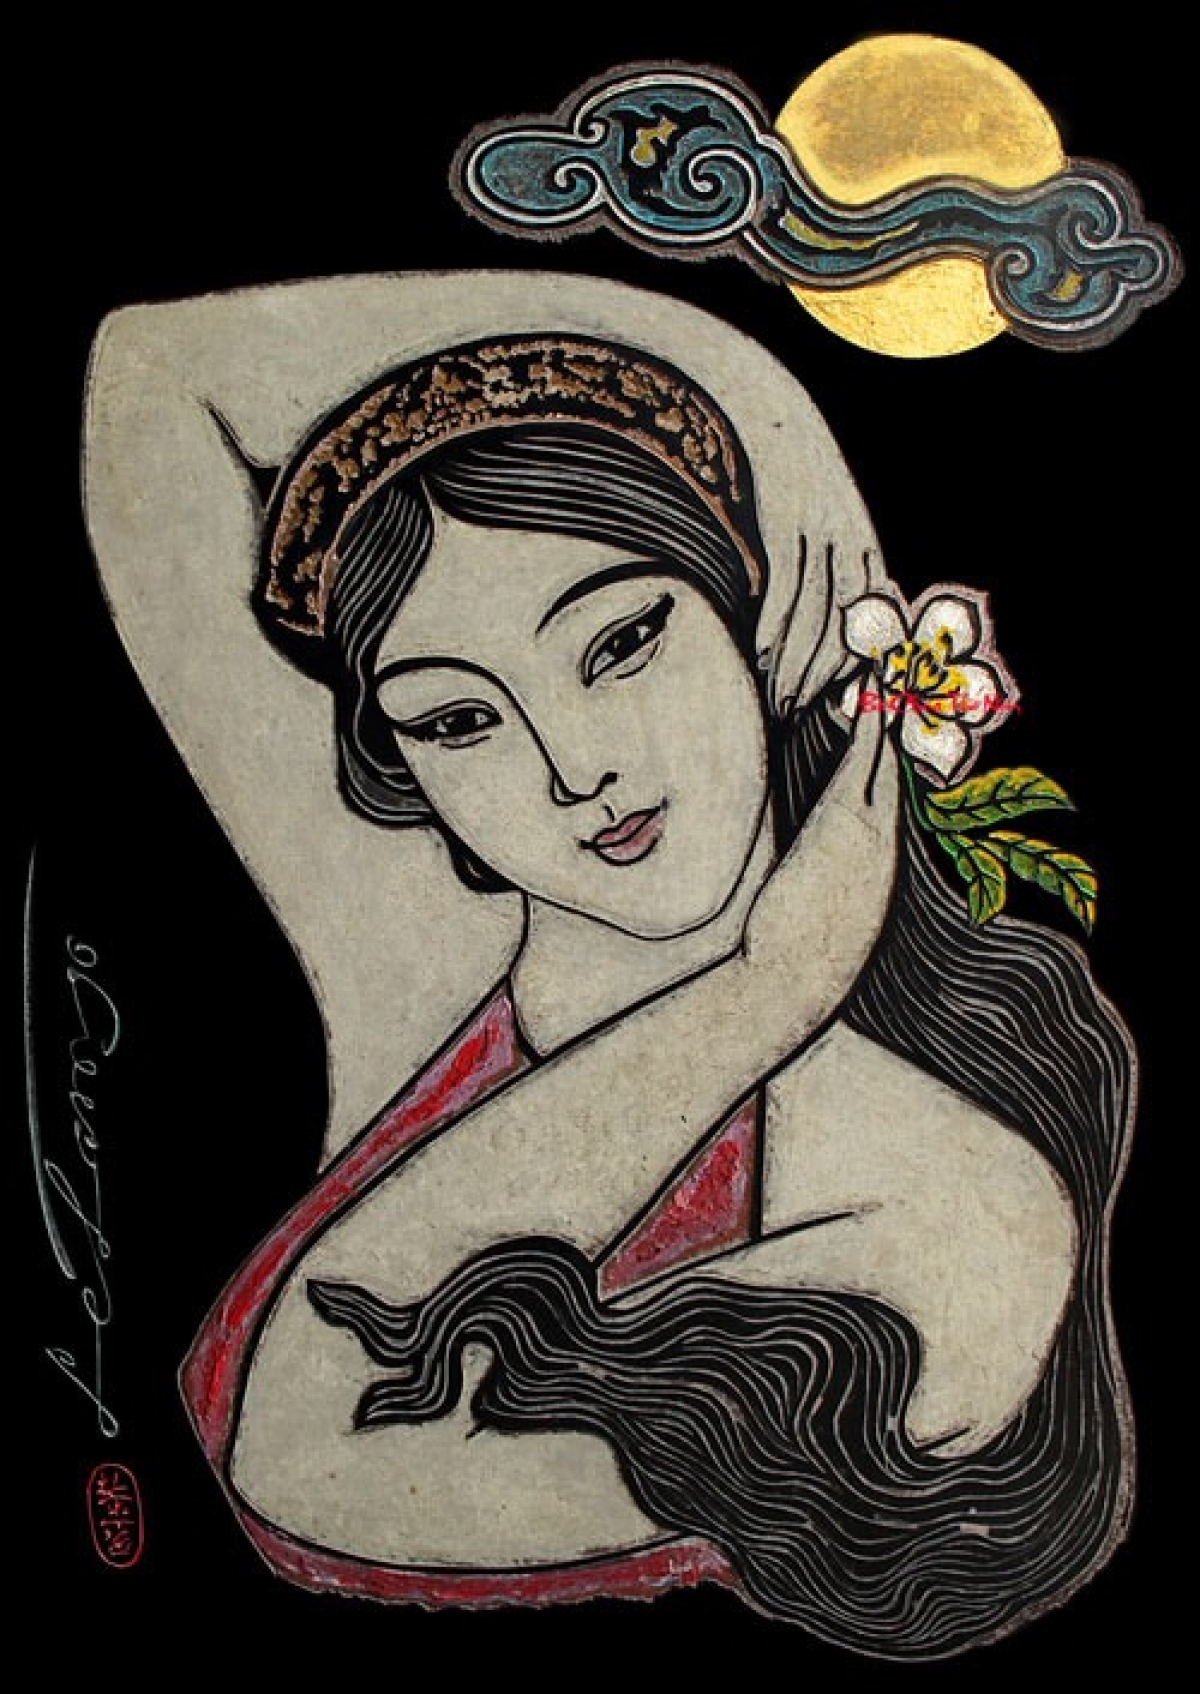 Tranh vẽ chân dung nữ sĩ Hồ Xuân Hương của họa sĩ Lê Lam. Ảnh: Internet